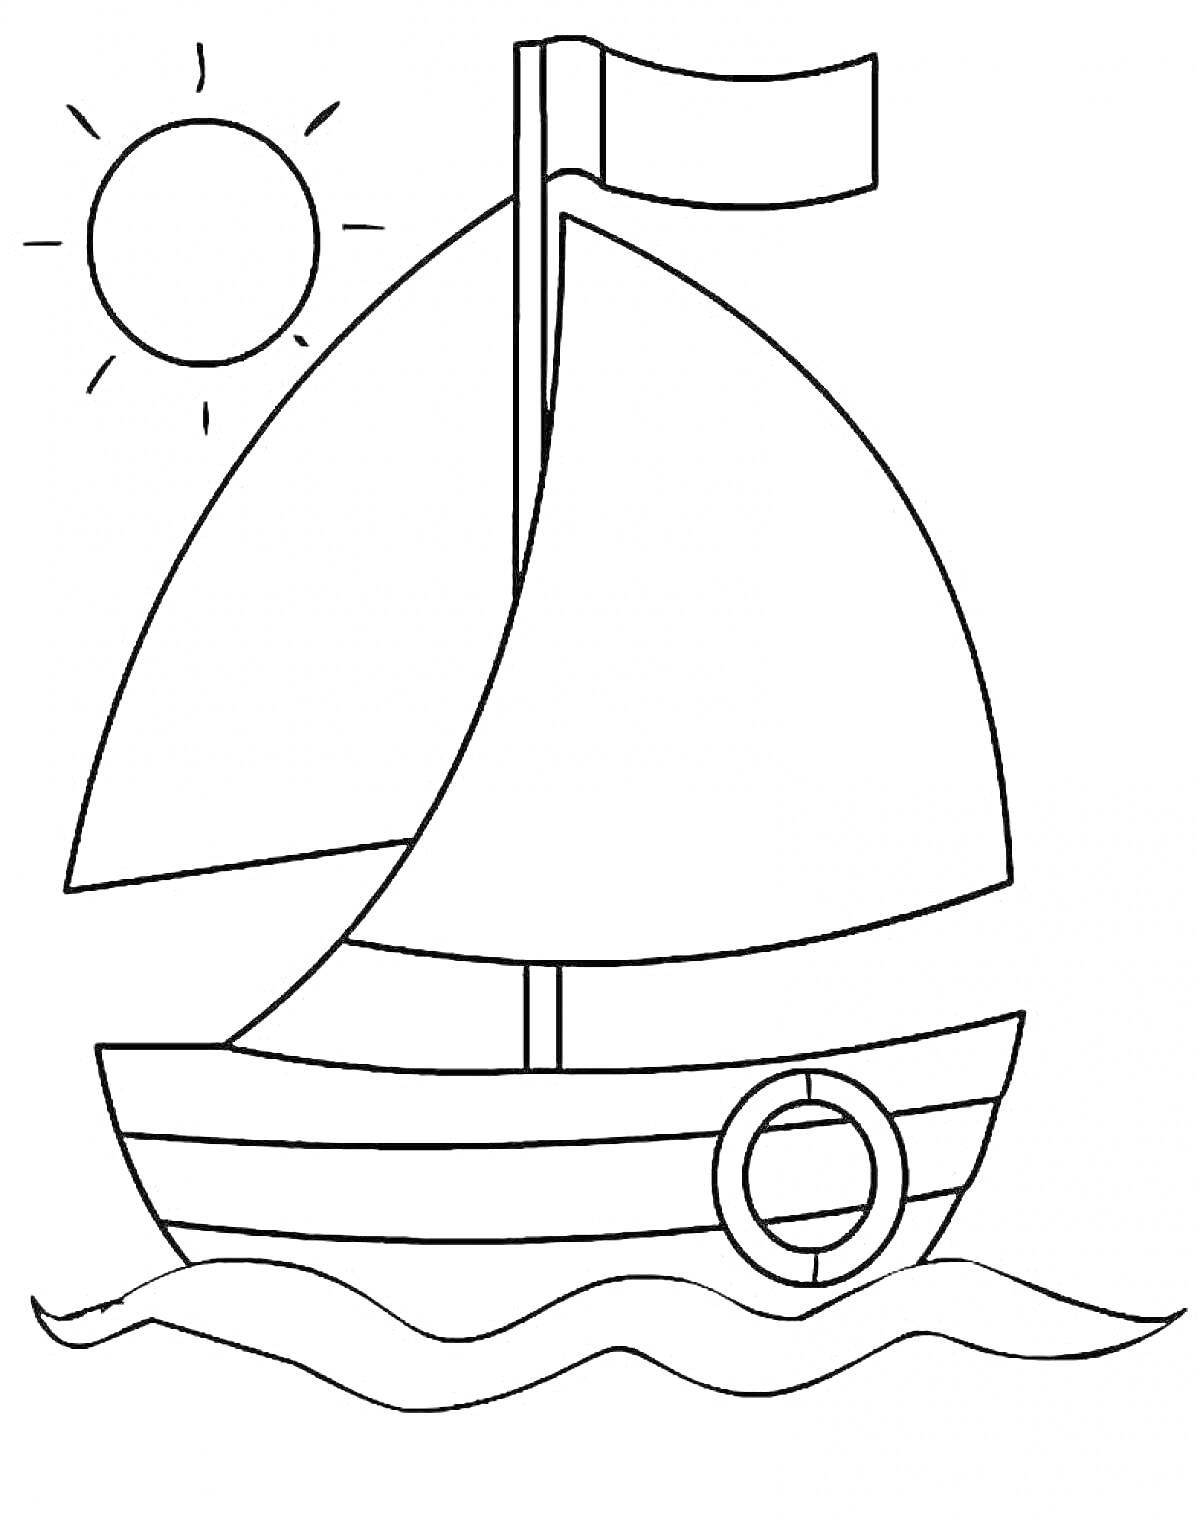 Раскраска Кораблик с парусами, флагом и спасательным кругом, плывущий по волнам, на фоне солнца